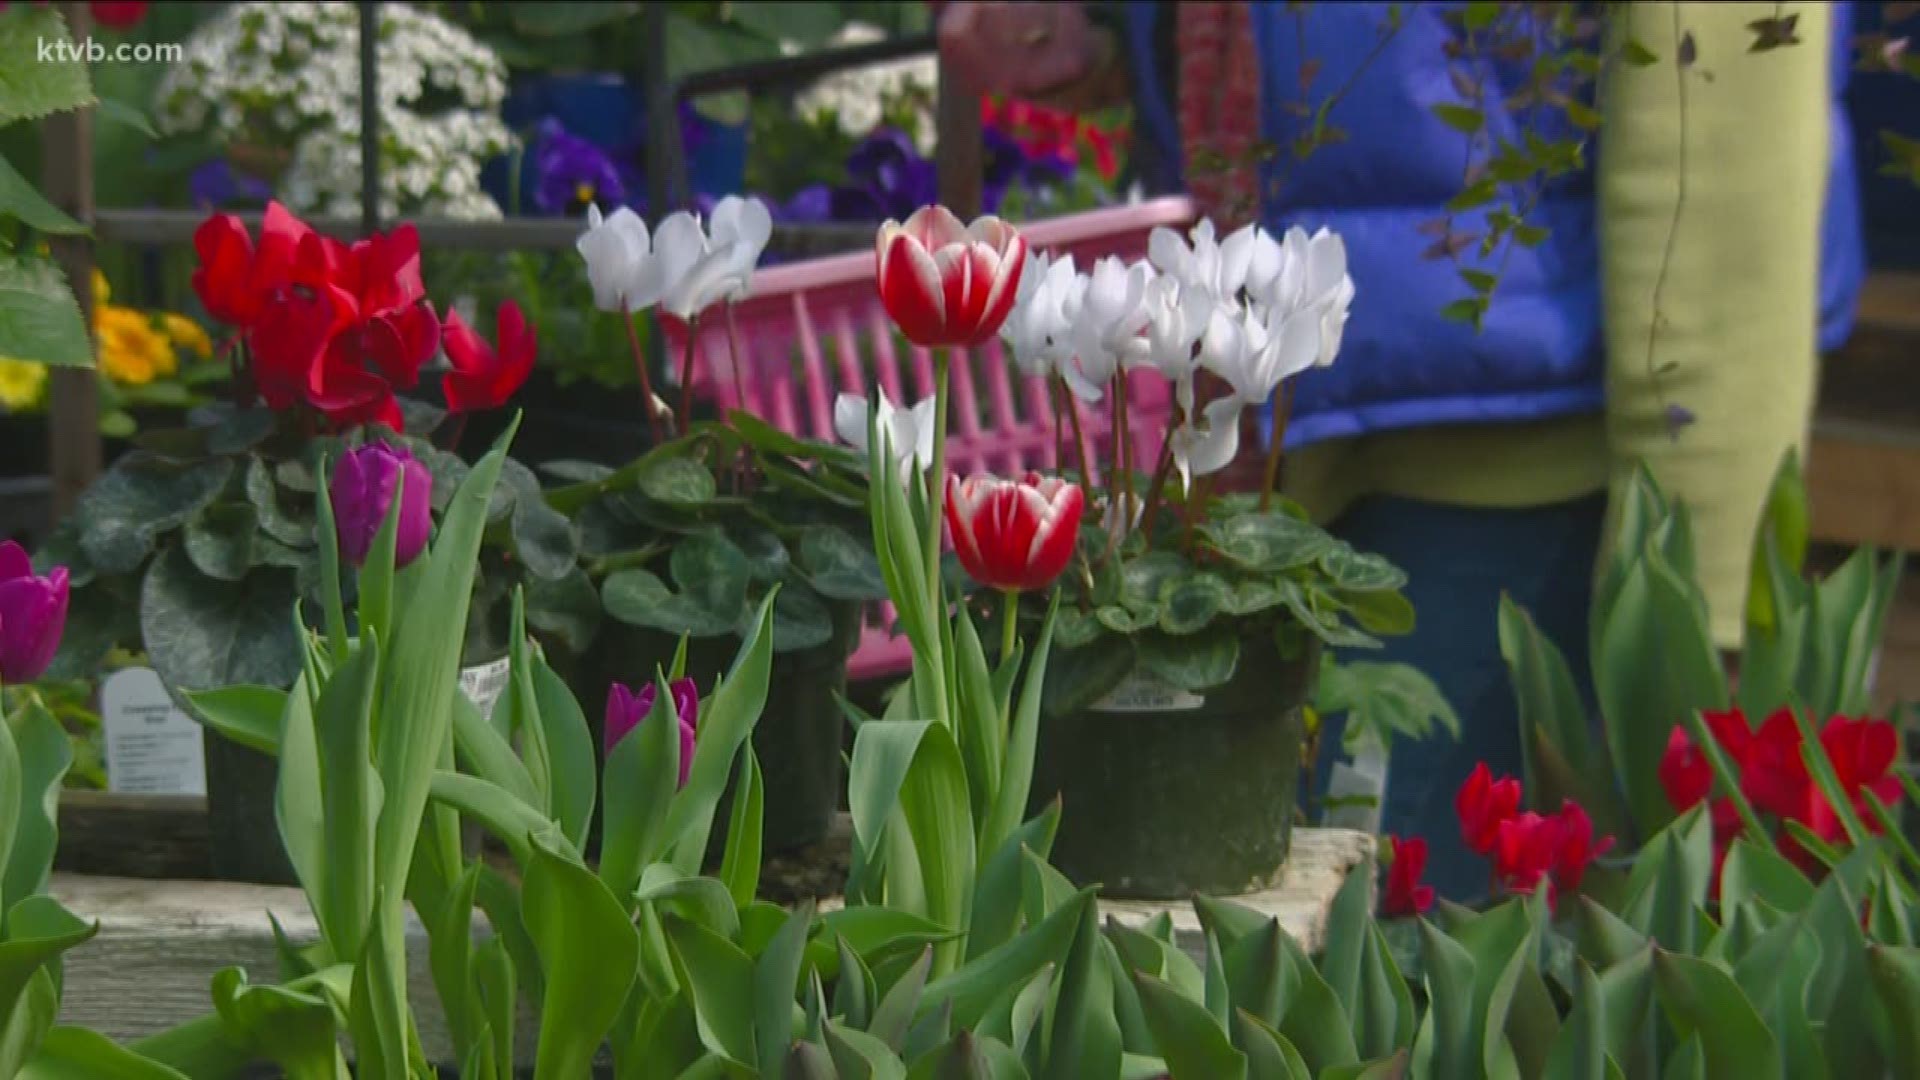 Cách trồng hoa tulip đơn giản và dễ hiểu sẽ giúp bạn có được những bông hoa tulip đầy sức sống và đẹp nhất trong khu vườn của mình. Hãy cùng tham khảo những kỹ thuật trồng hoa tulip và những lời khuyên hữu ích trong hình ảnh này.